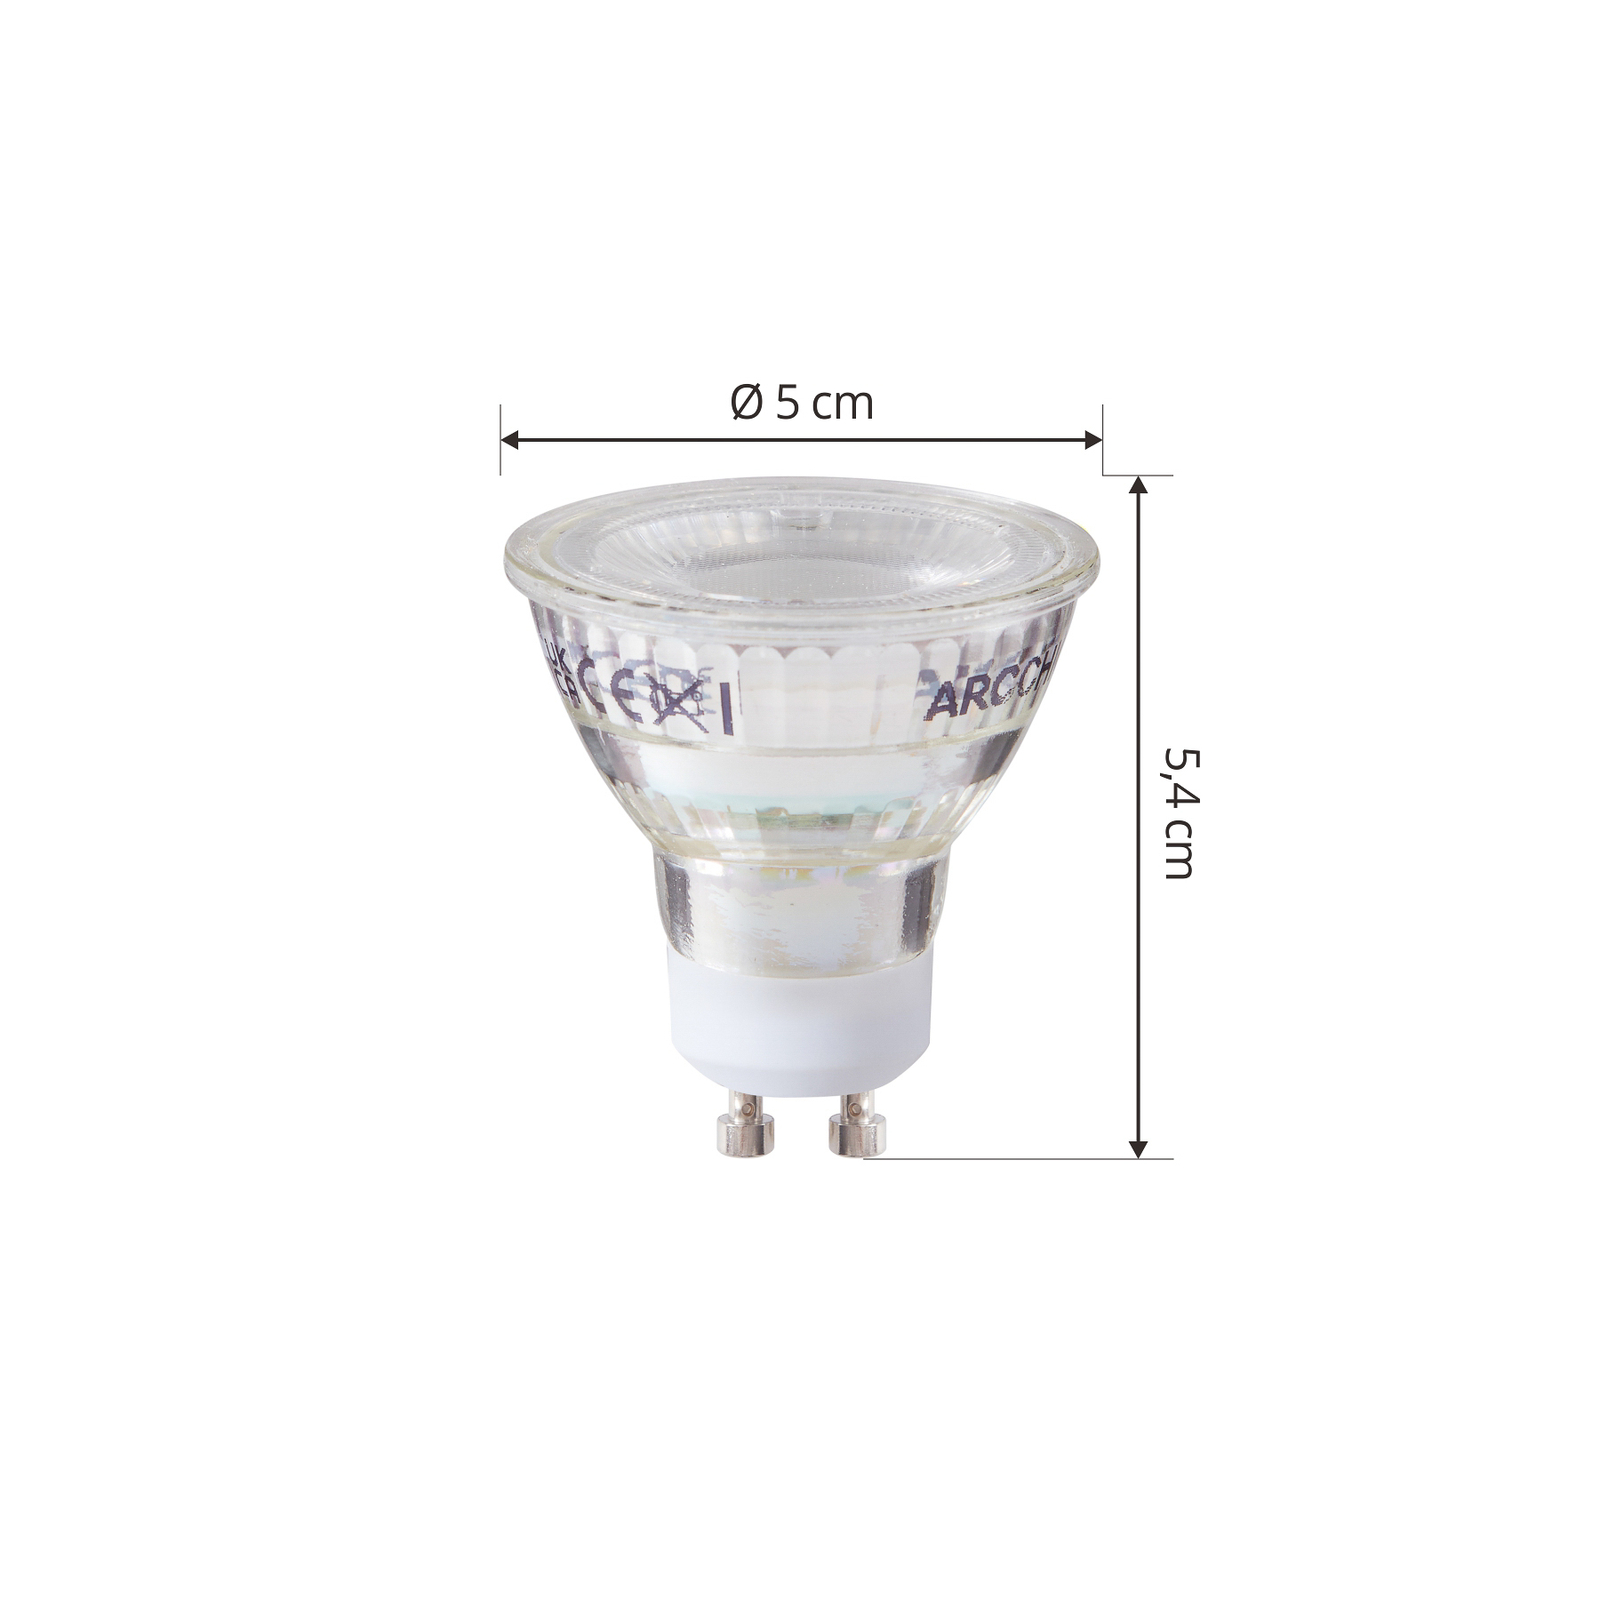 Conjunto de 3 lâmpadas LED Arcchio GU10 2.5W 6500K 450lm em vidro